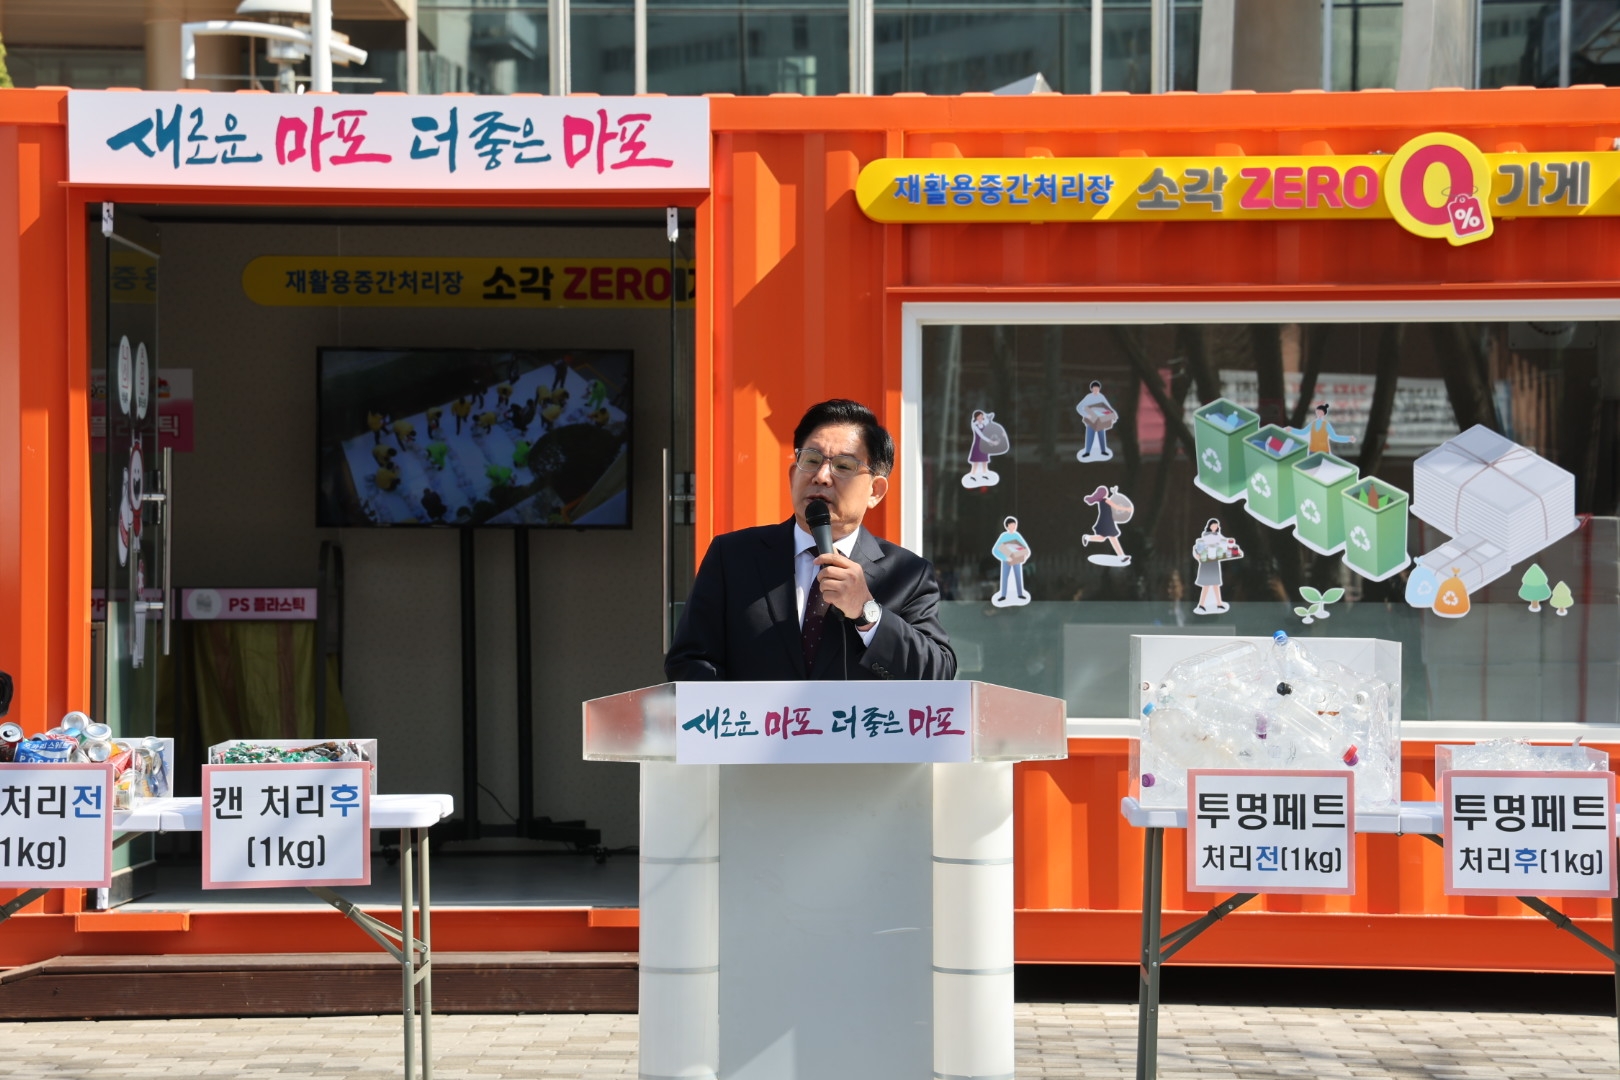 박강수 마포구청장이 구청 광장 소각 제로가게에서 인사말을 하는 모습./사진제공=마포구